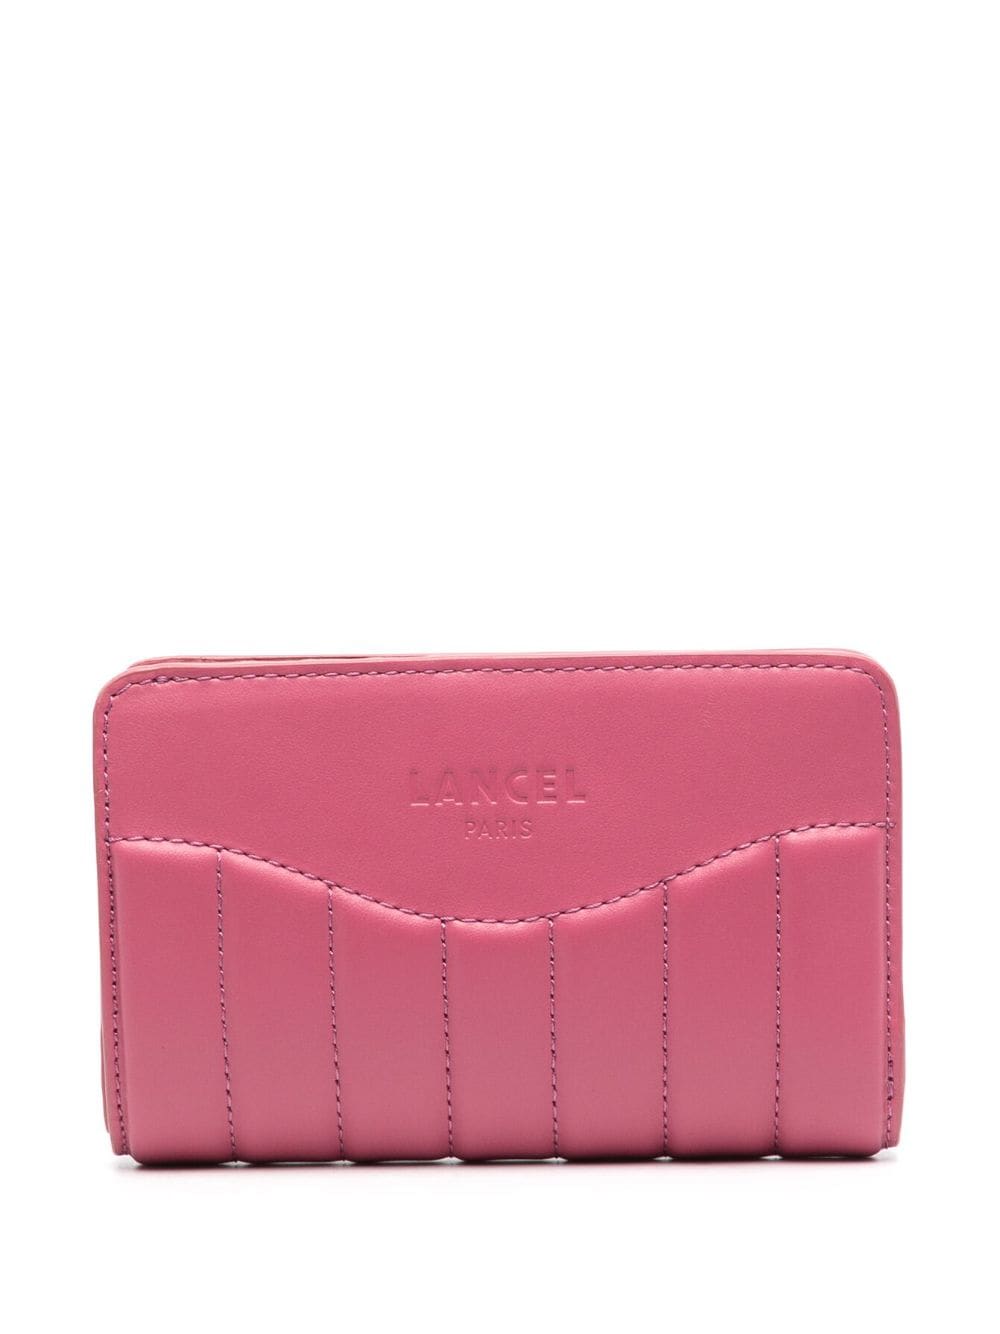 Lancel Rodeo De  Compact Wallet In Pink